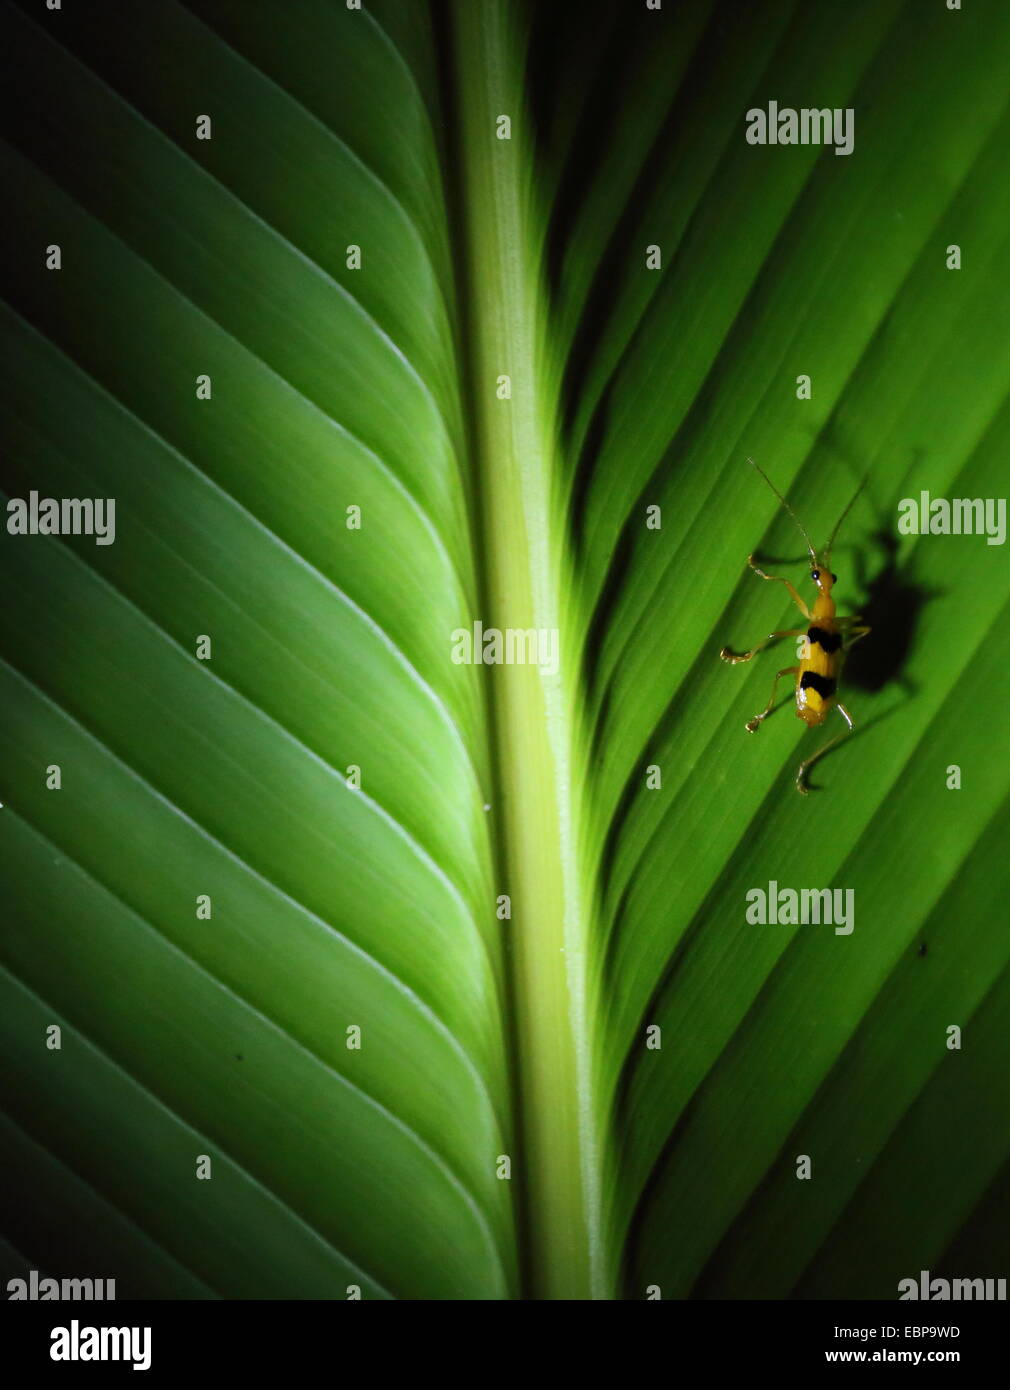 Un petit insecte noir et jaune dépouillé reposant sur une grande feuille, à la nuit, avec une grande ombre. Parc National Manuel Antonio. Banque D'Images